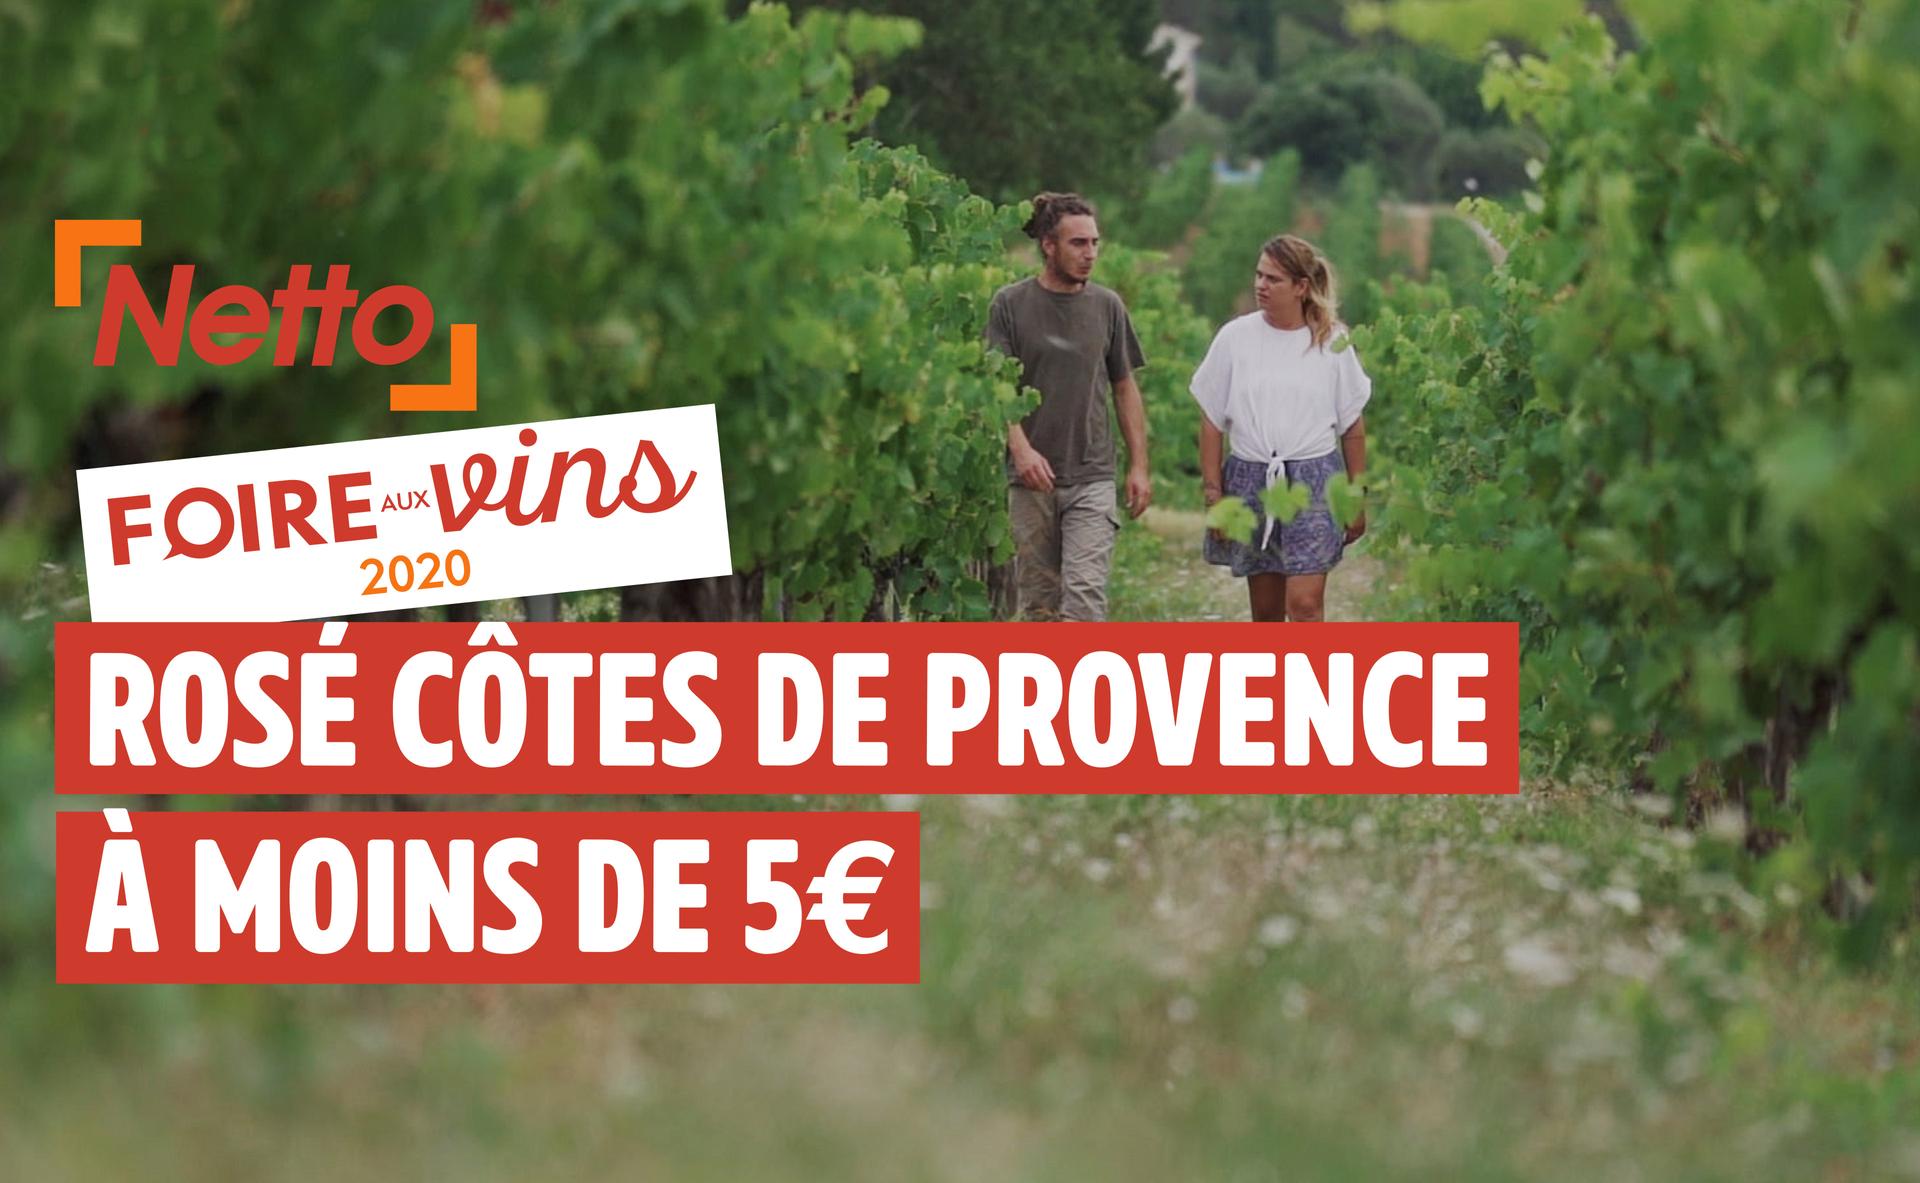 Foire aux vins 2020 : AOP Côtes de Provence